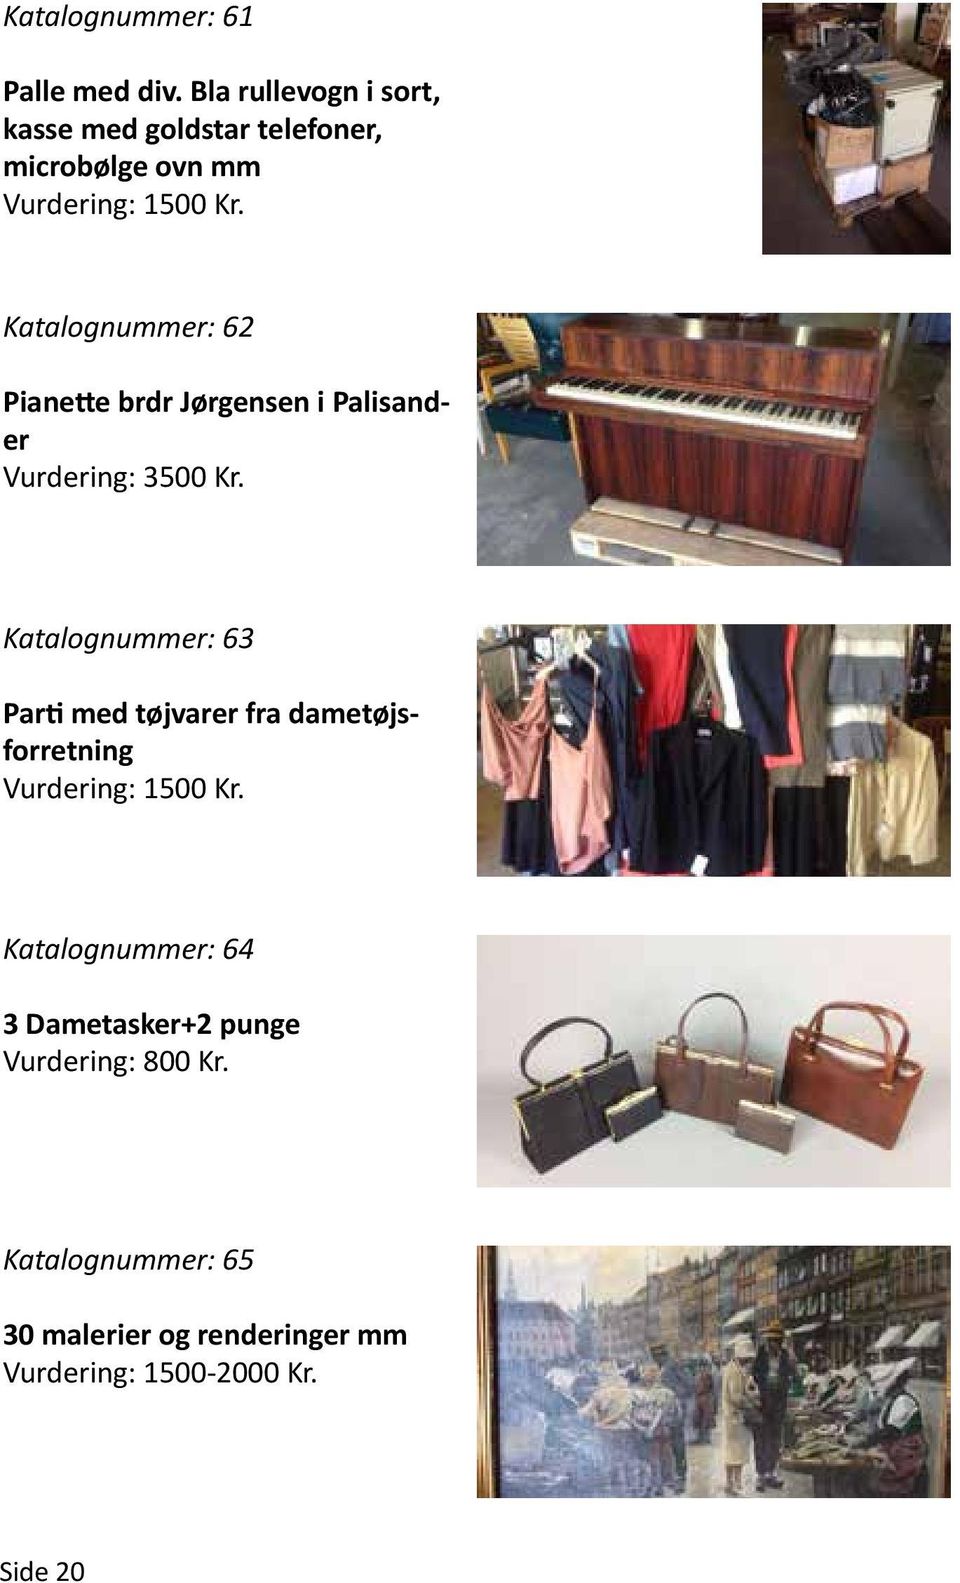 Katalognummer: 62 Pianette brdr Jørgensen i Palisander Vurdering: 3500 Kr.